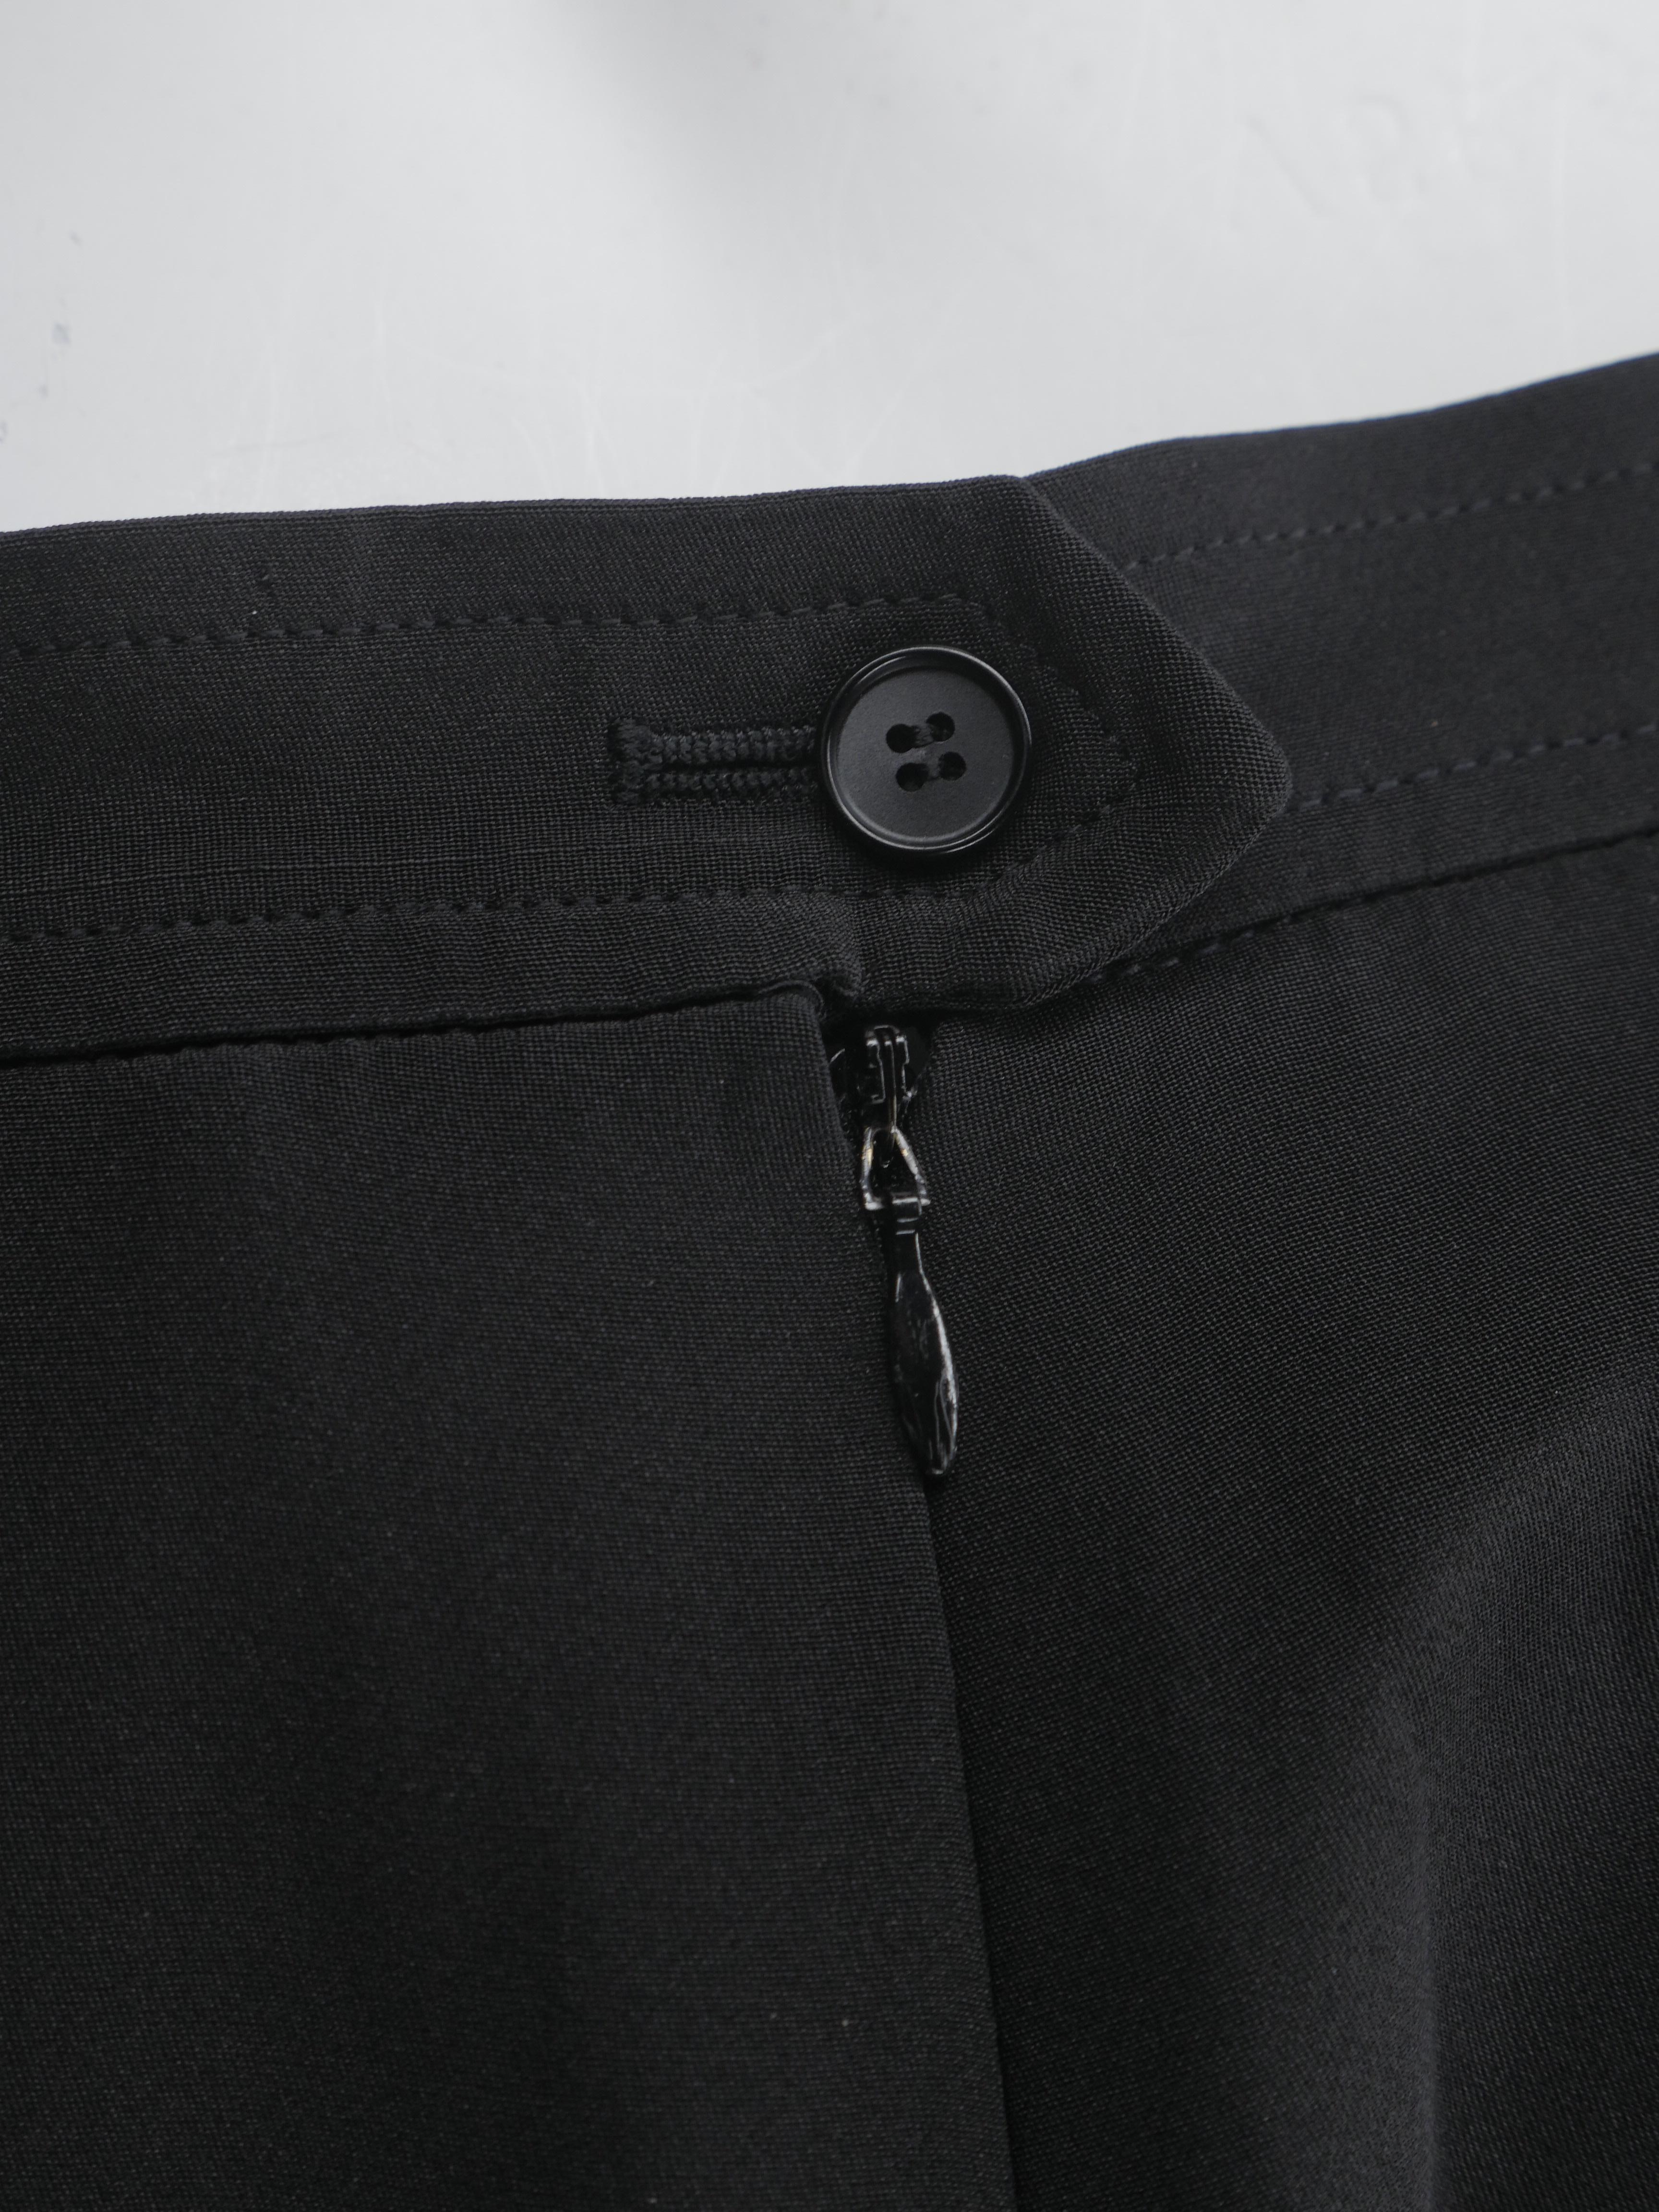 Women's or Men's Yves Saint Laurent Size 46 Black Silk Maxi Skirt